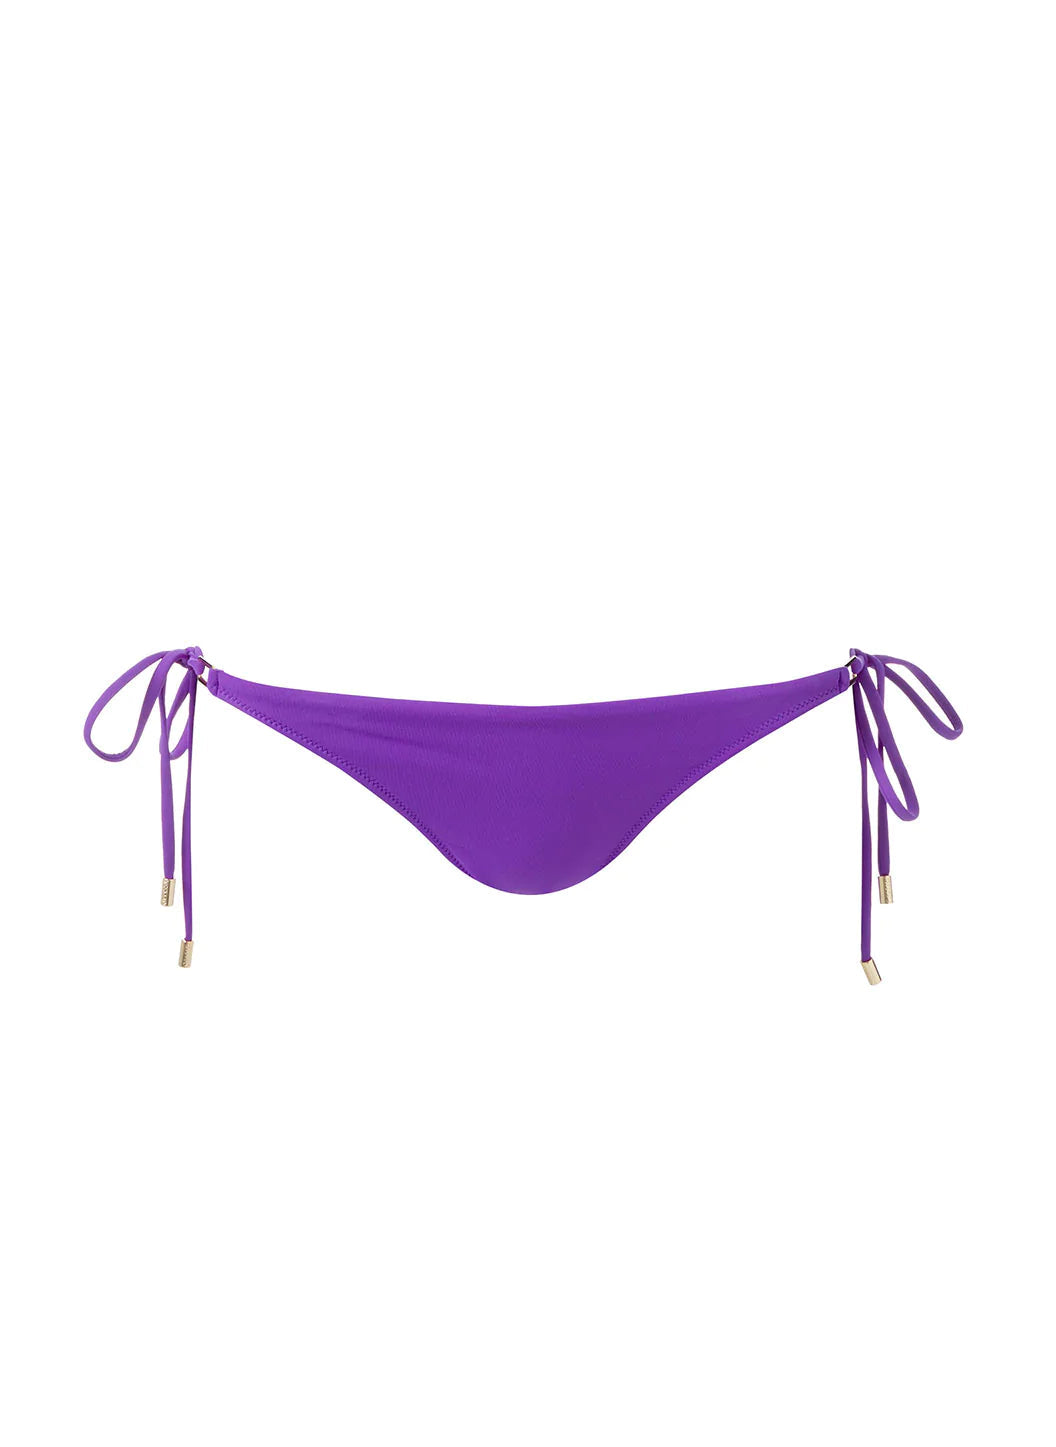 Cancun Violet Bikini Bottom